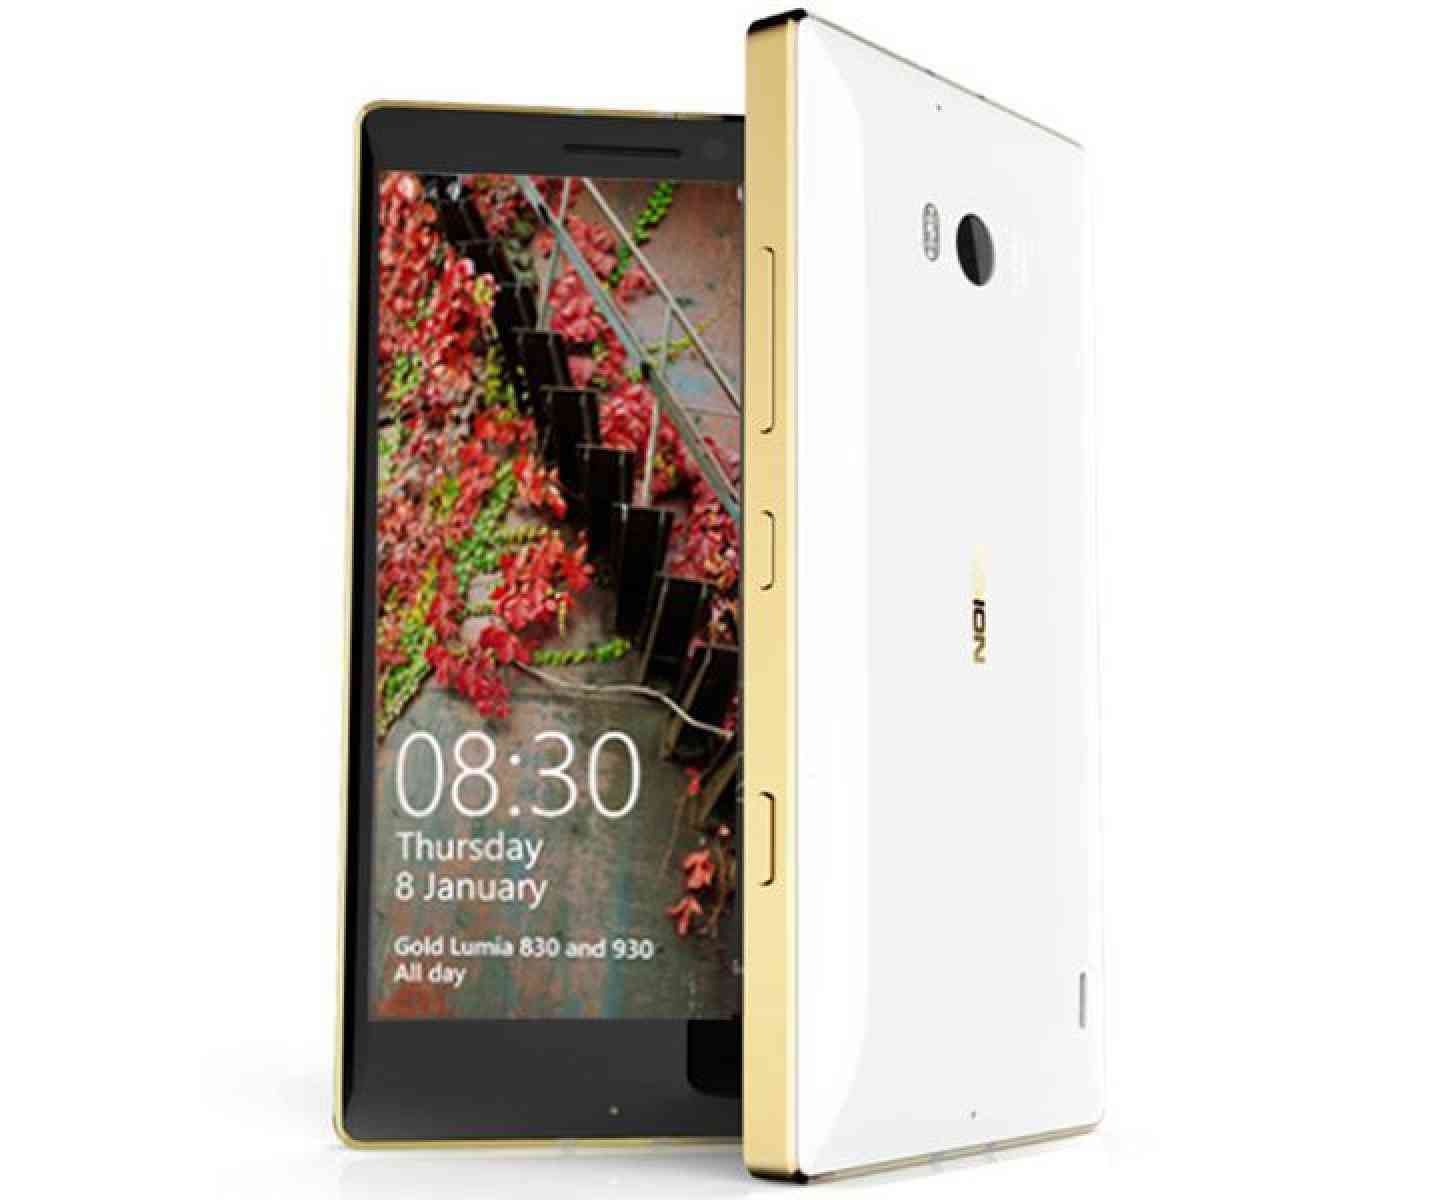 Gold Nokia Lumia 930 white official